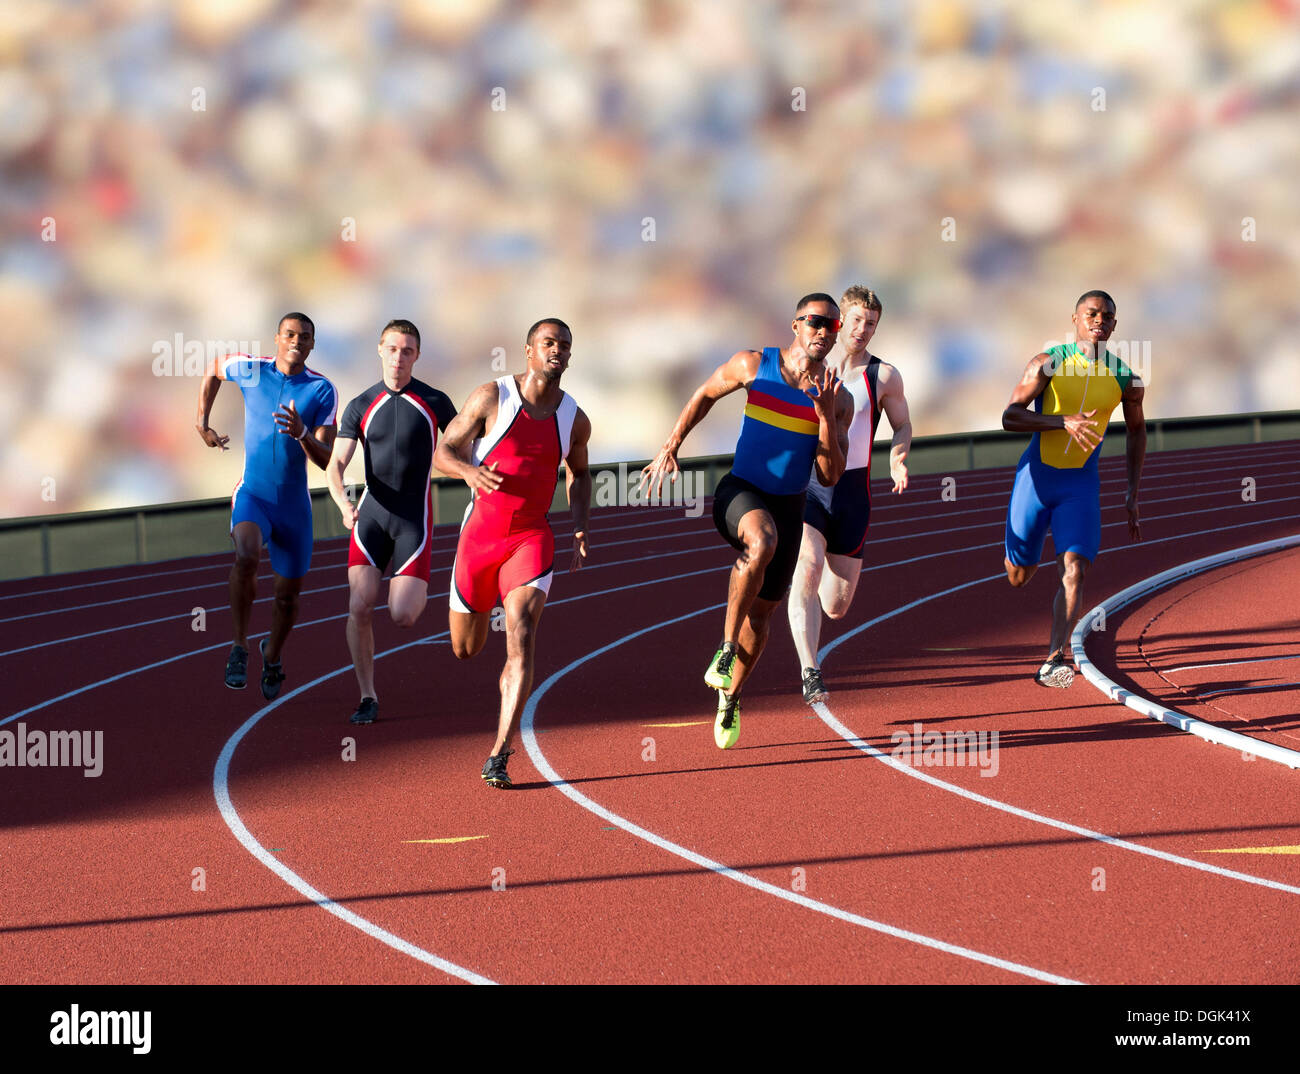 Running race immagini e fotografie stock ad alta risoluzione - Alamy